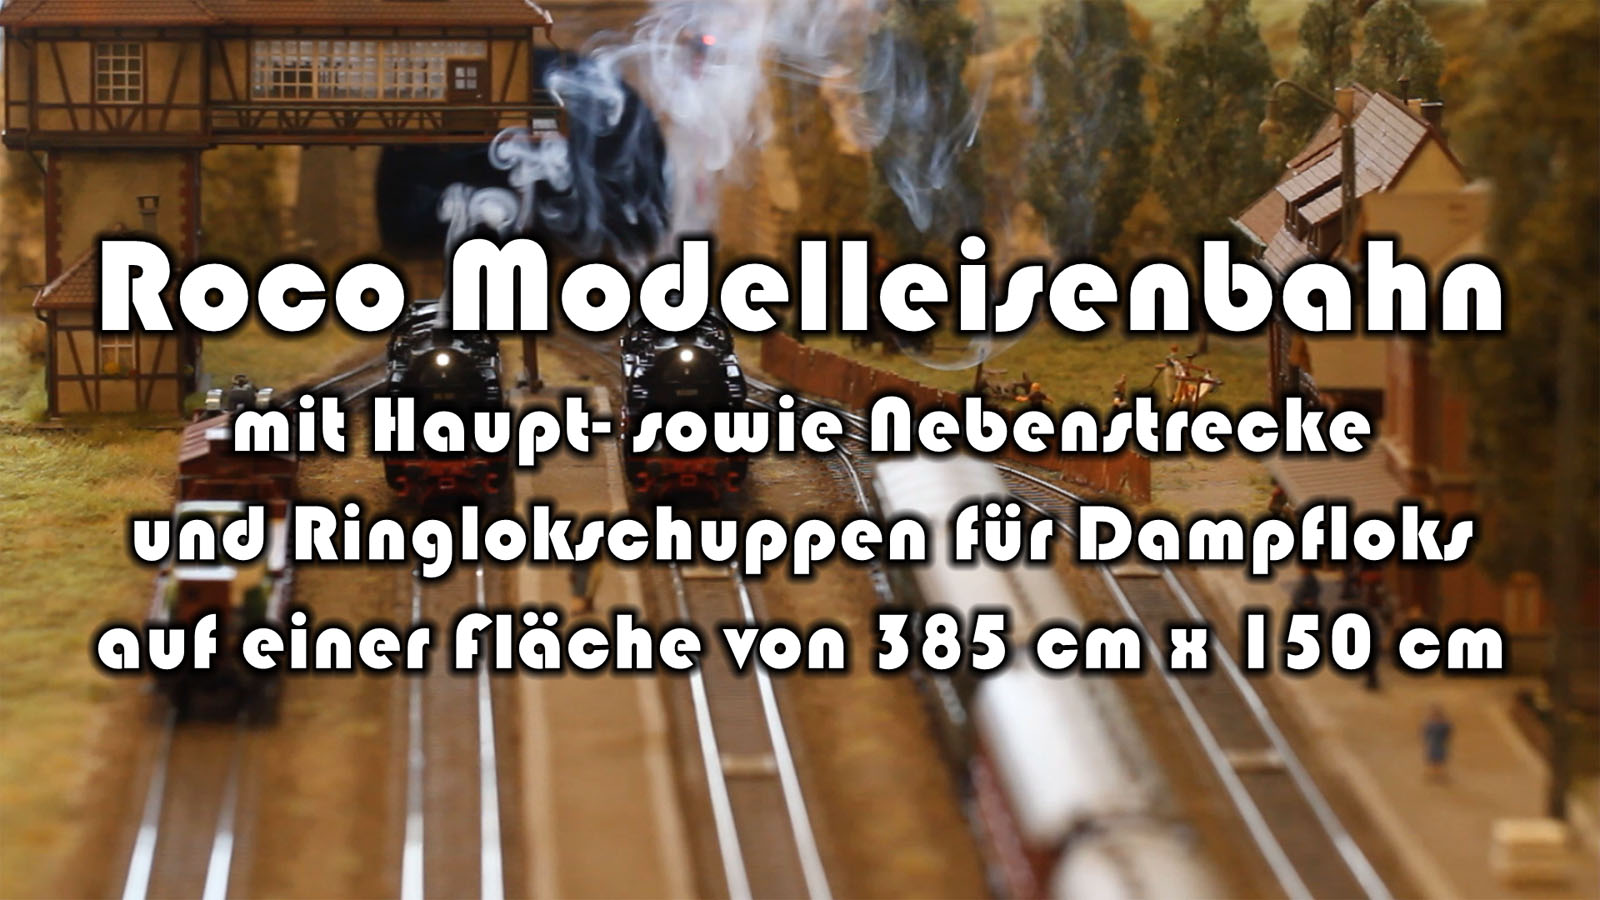 Roco Modellbahn H0 mit Ringlokschuppen für Dampfloks von Happy Modell aus Budapest